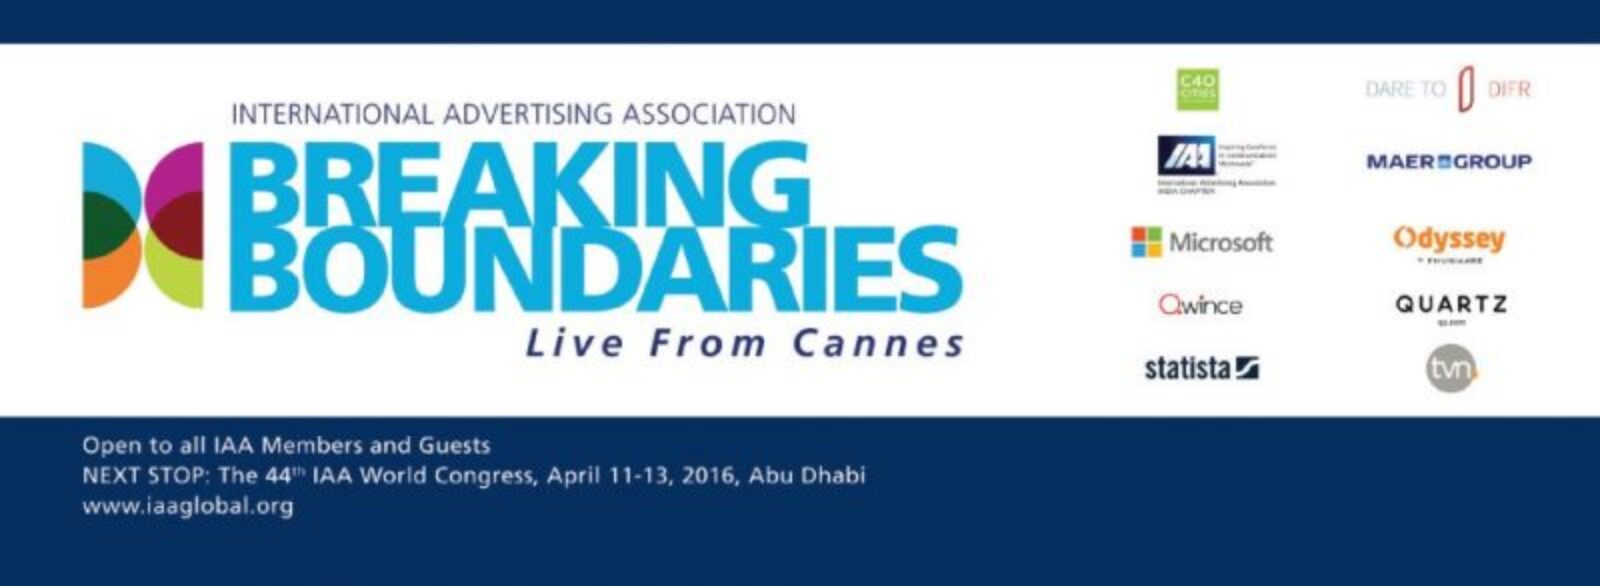 Neuralya @ Cannes Lions 2015 “Breaking Boundaries”